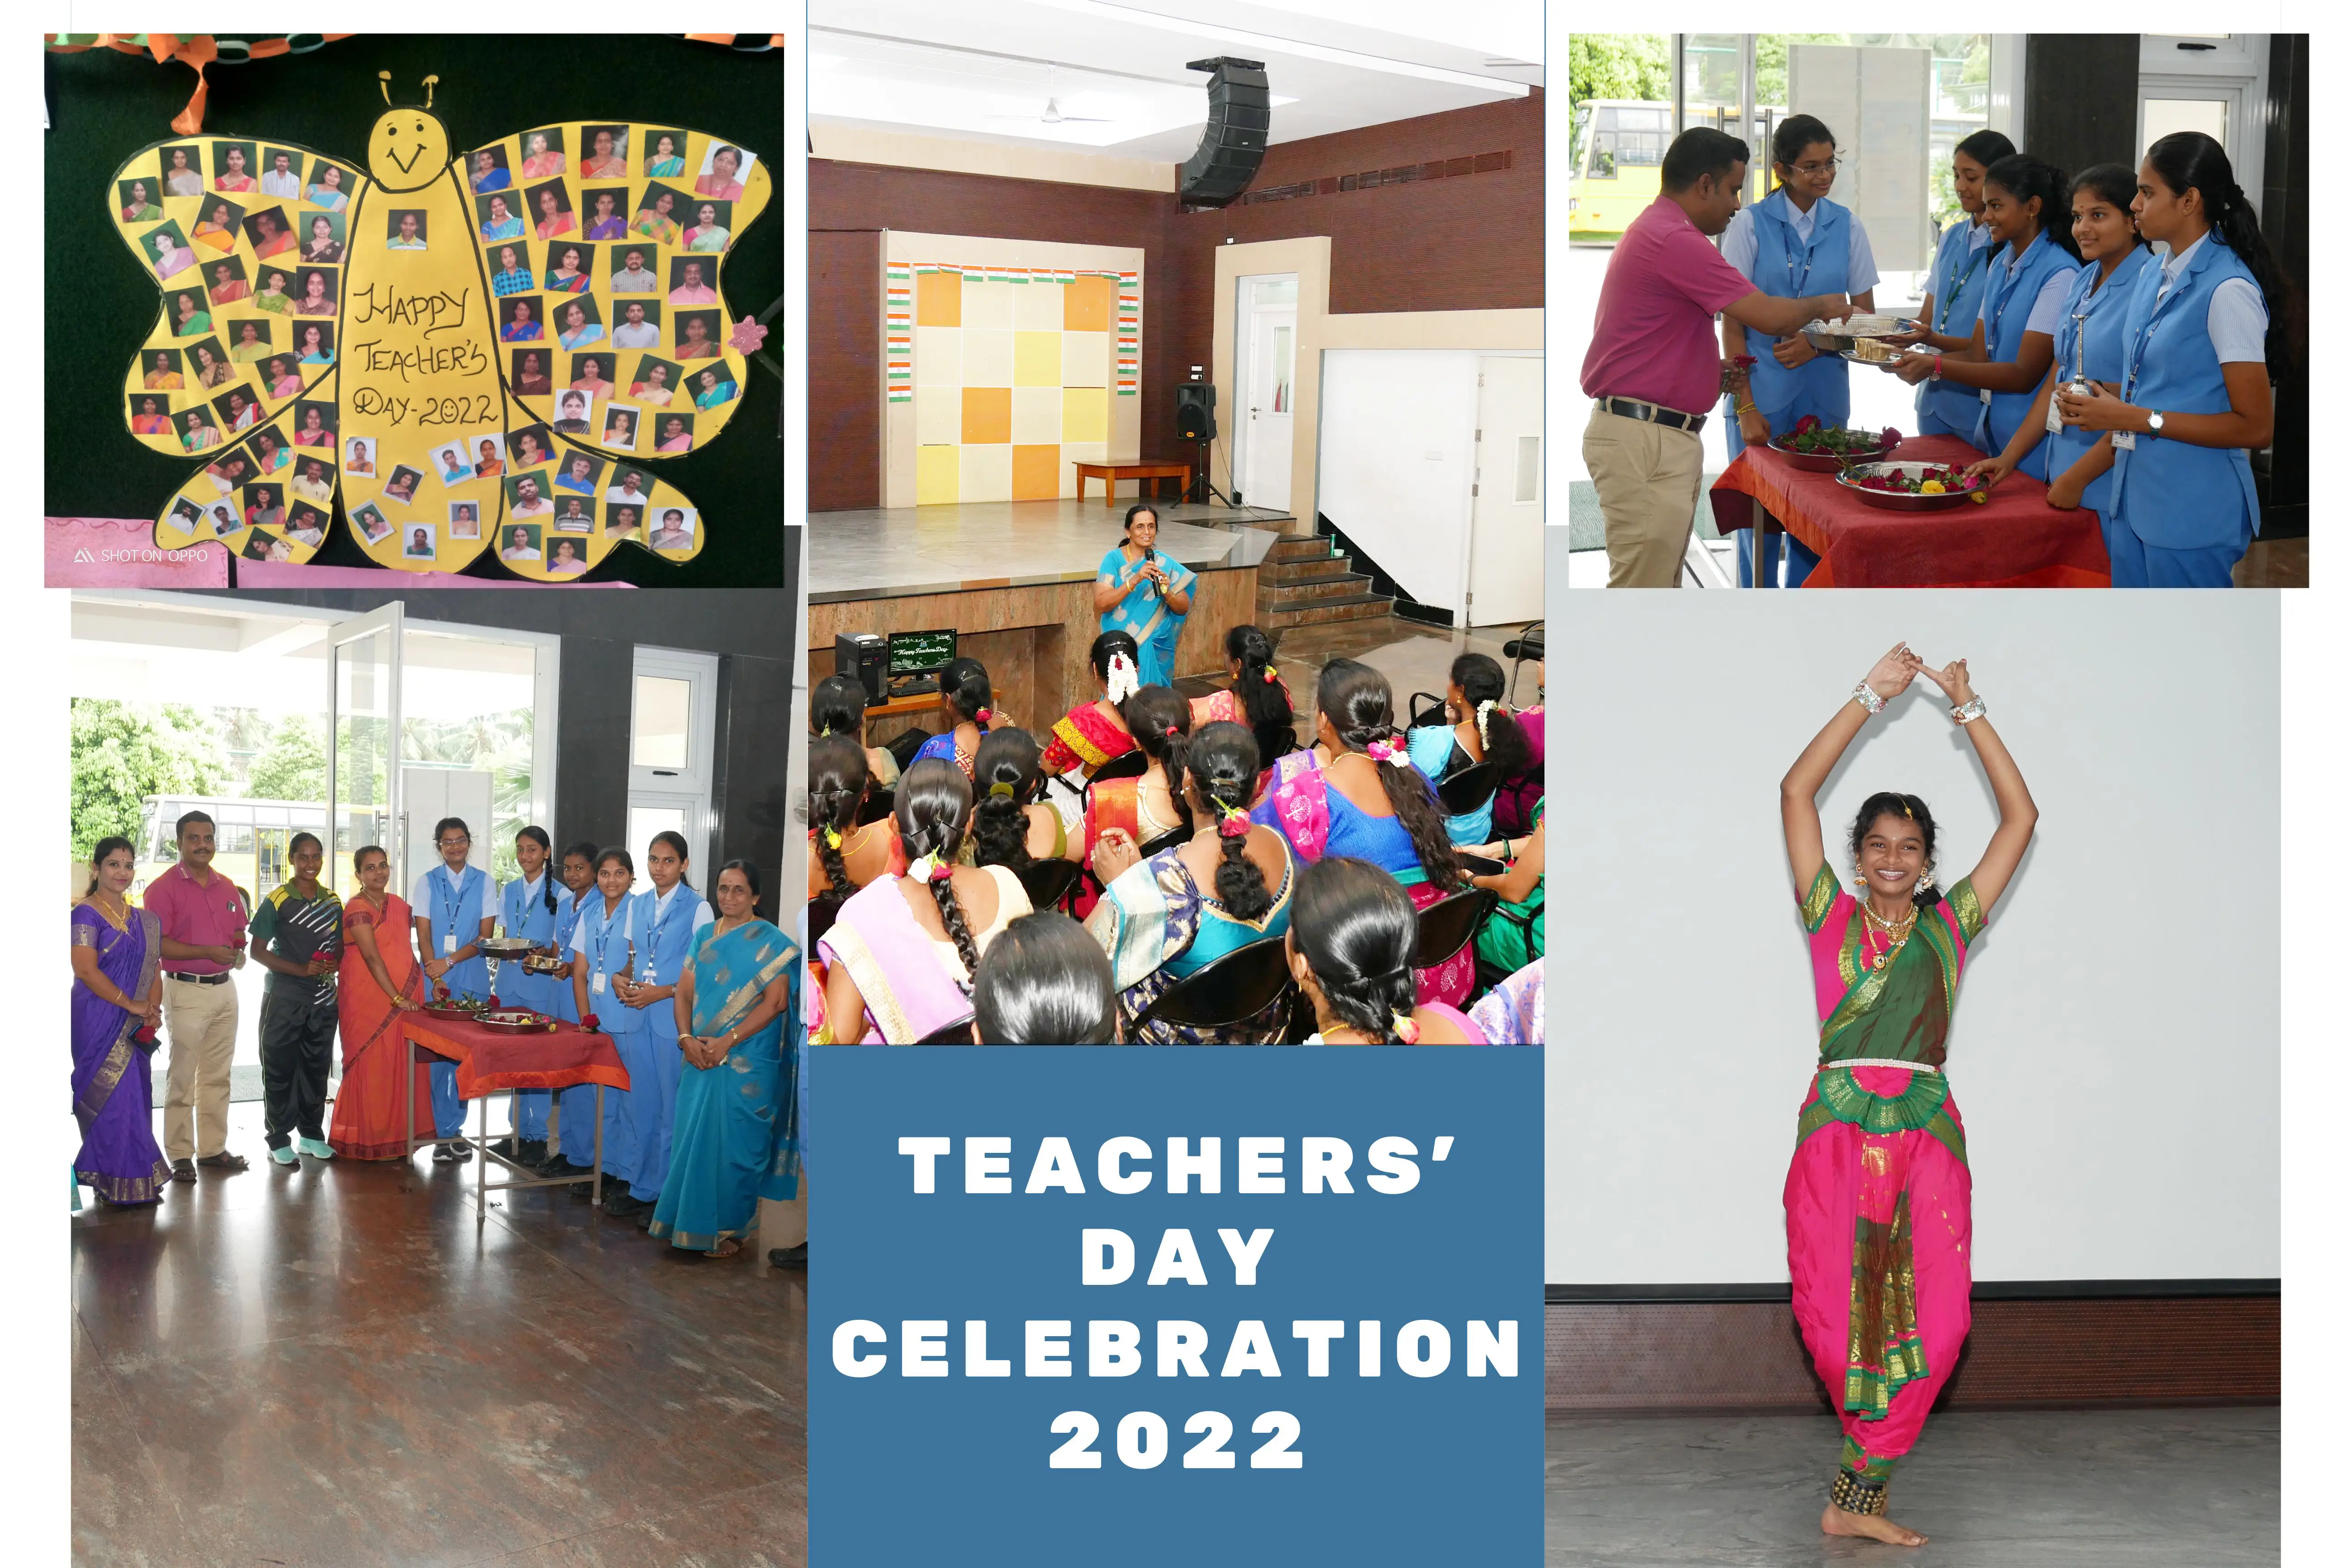 TEACHERS' DAY CELEBRATION 2022